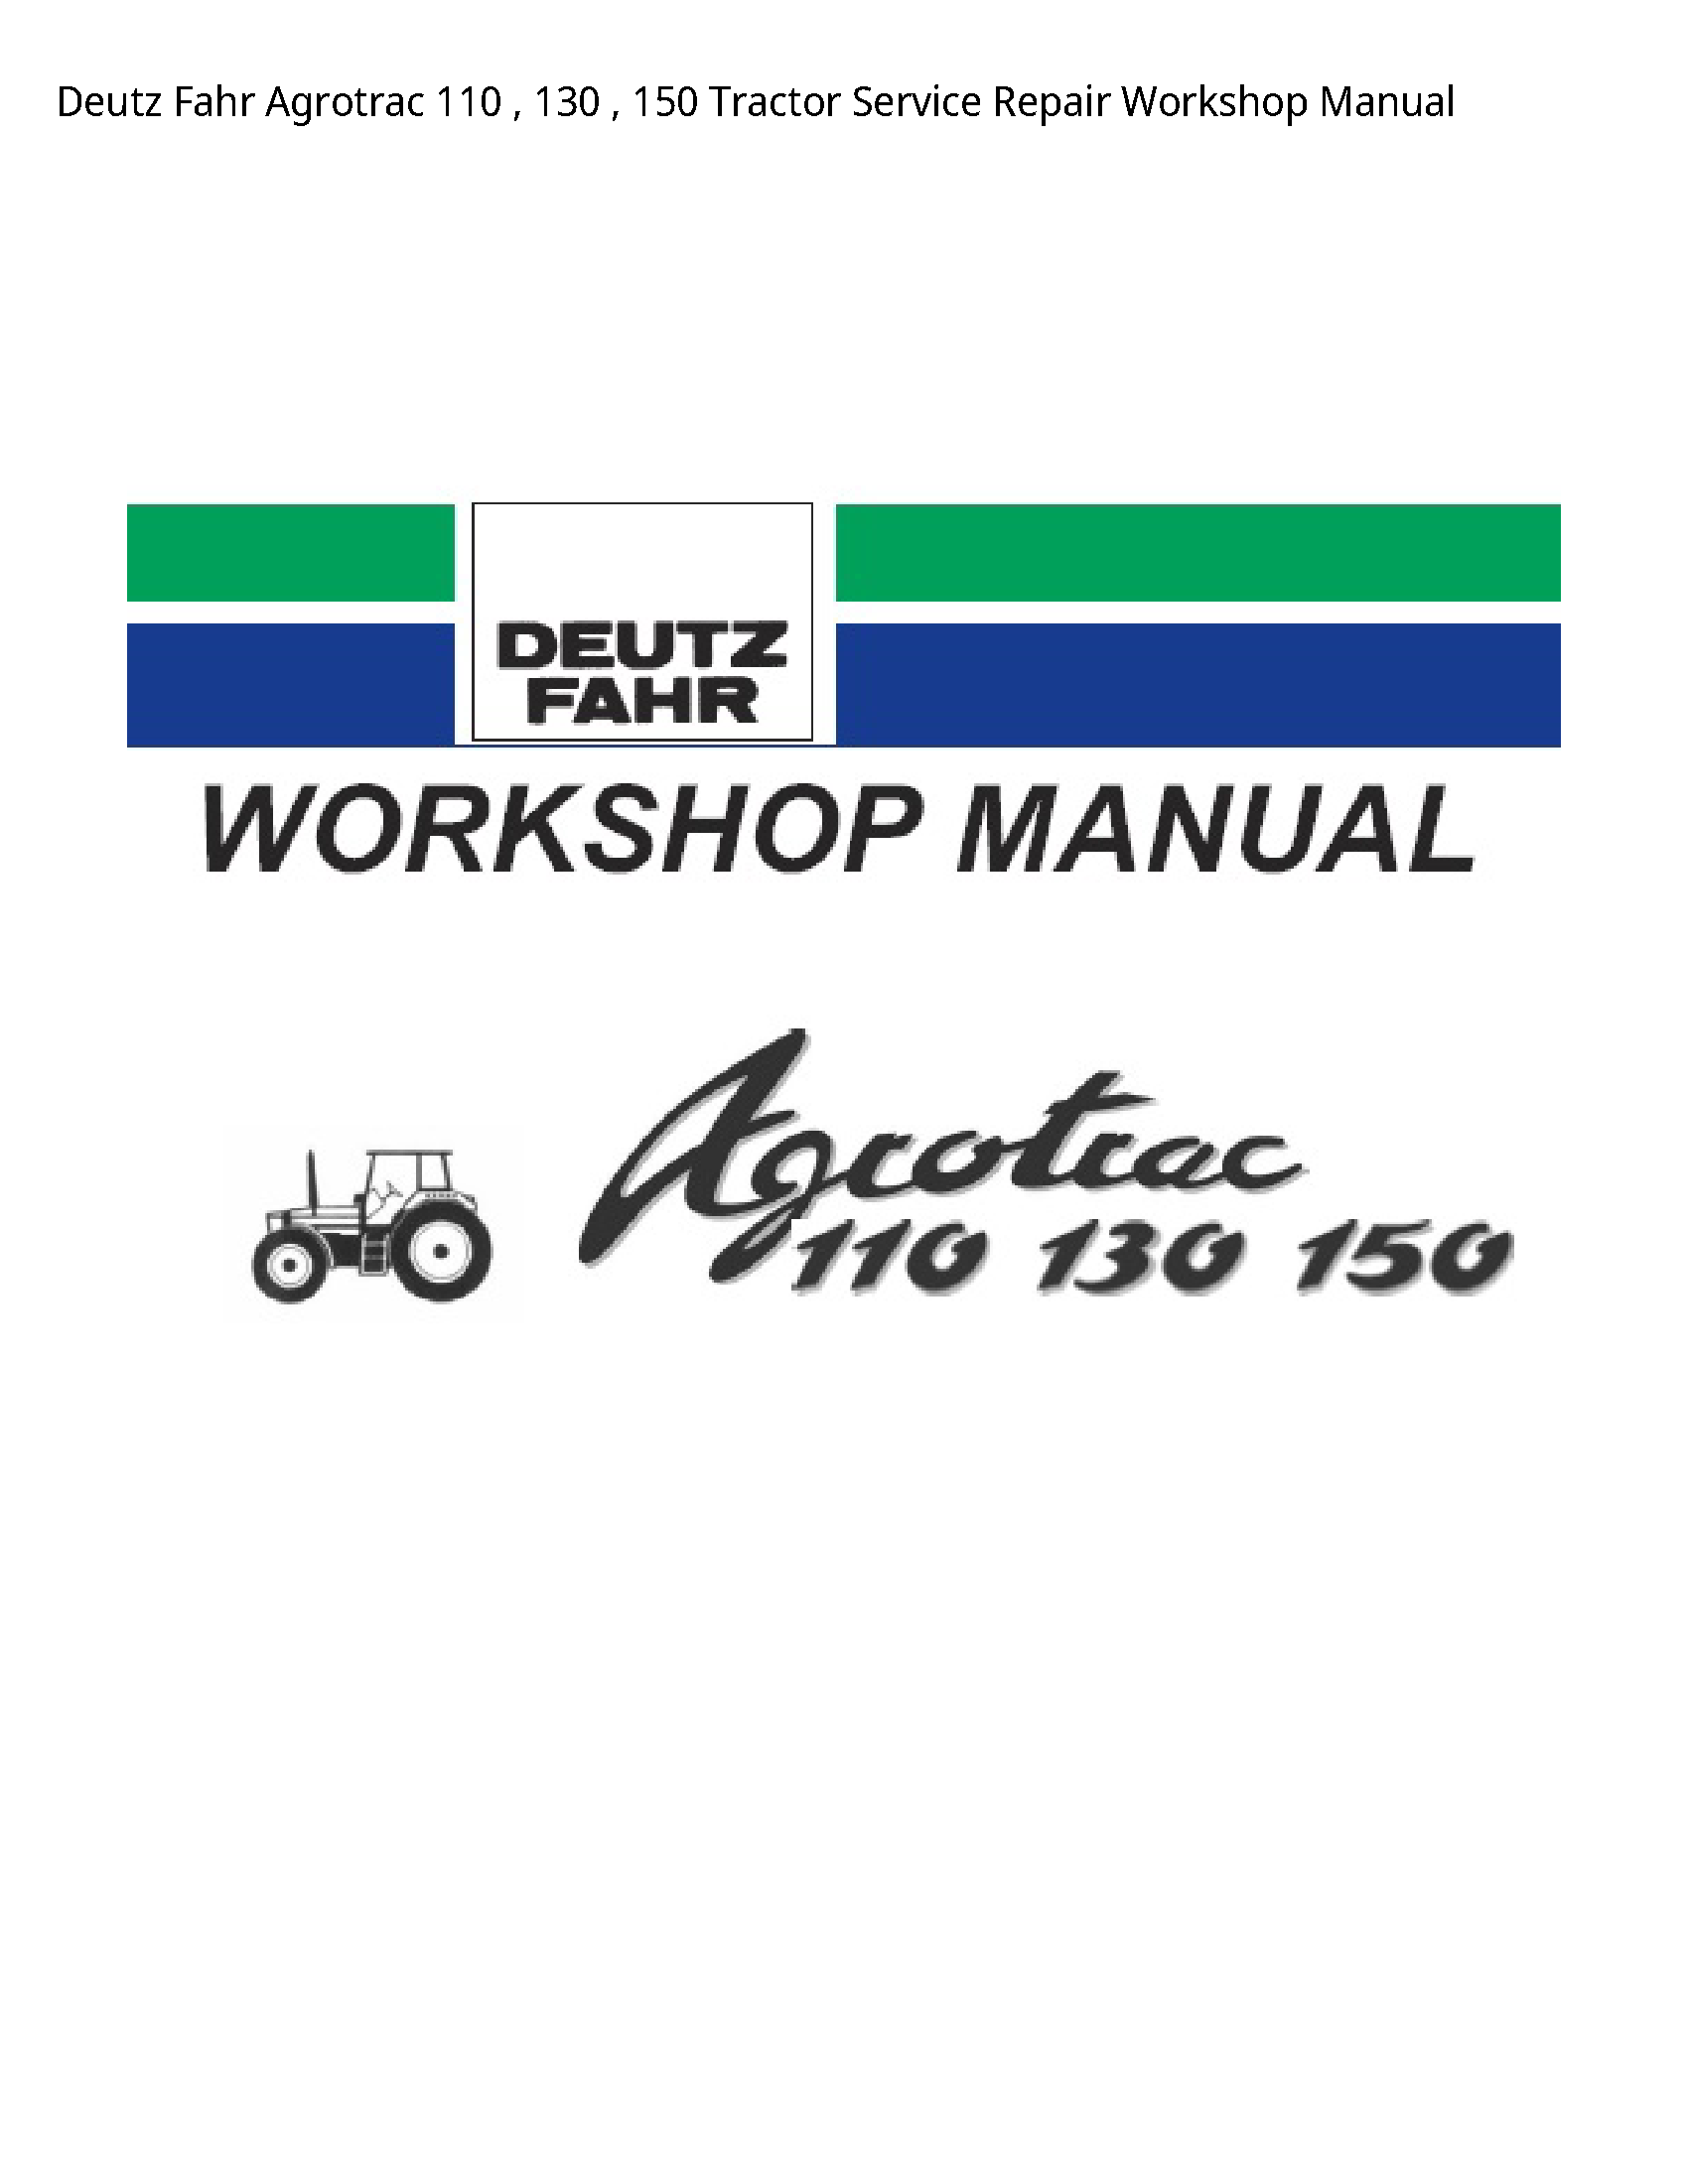 Deutz 110 Fahr Agrotrac Tractor manual